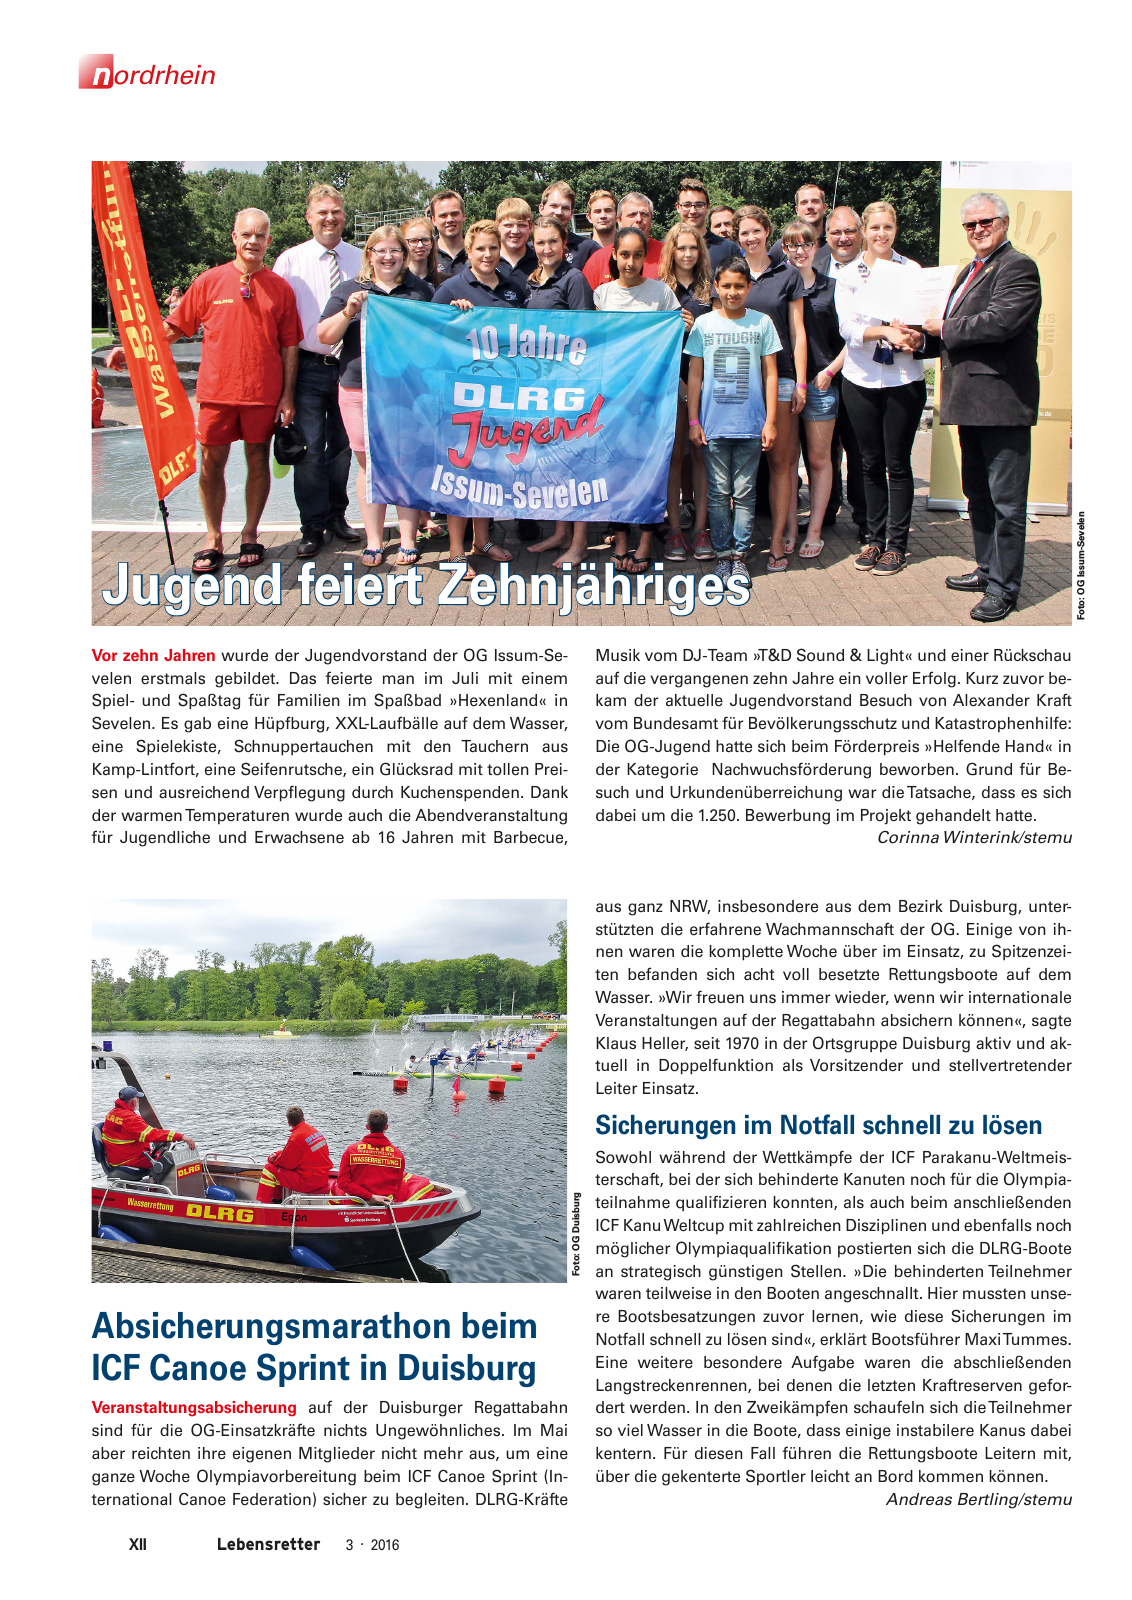 Vorschau Lebensretter 3/2016 - Regionalausgabe Nordrhein Seite 14